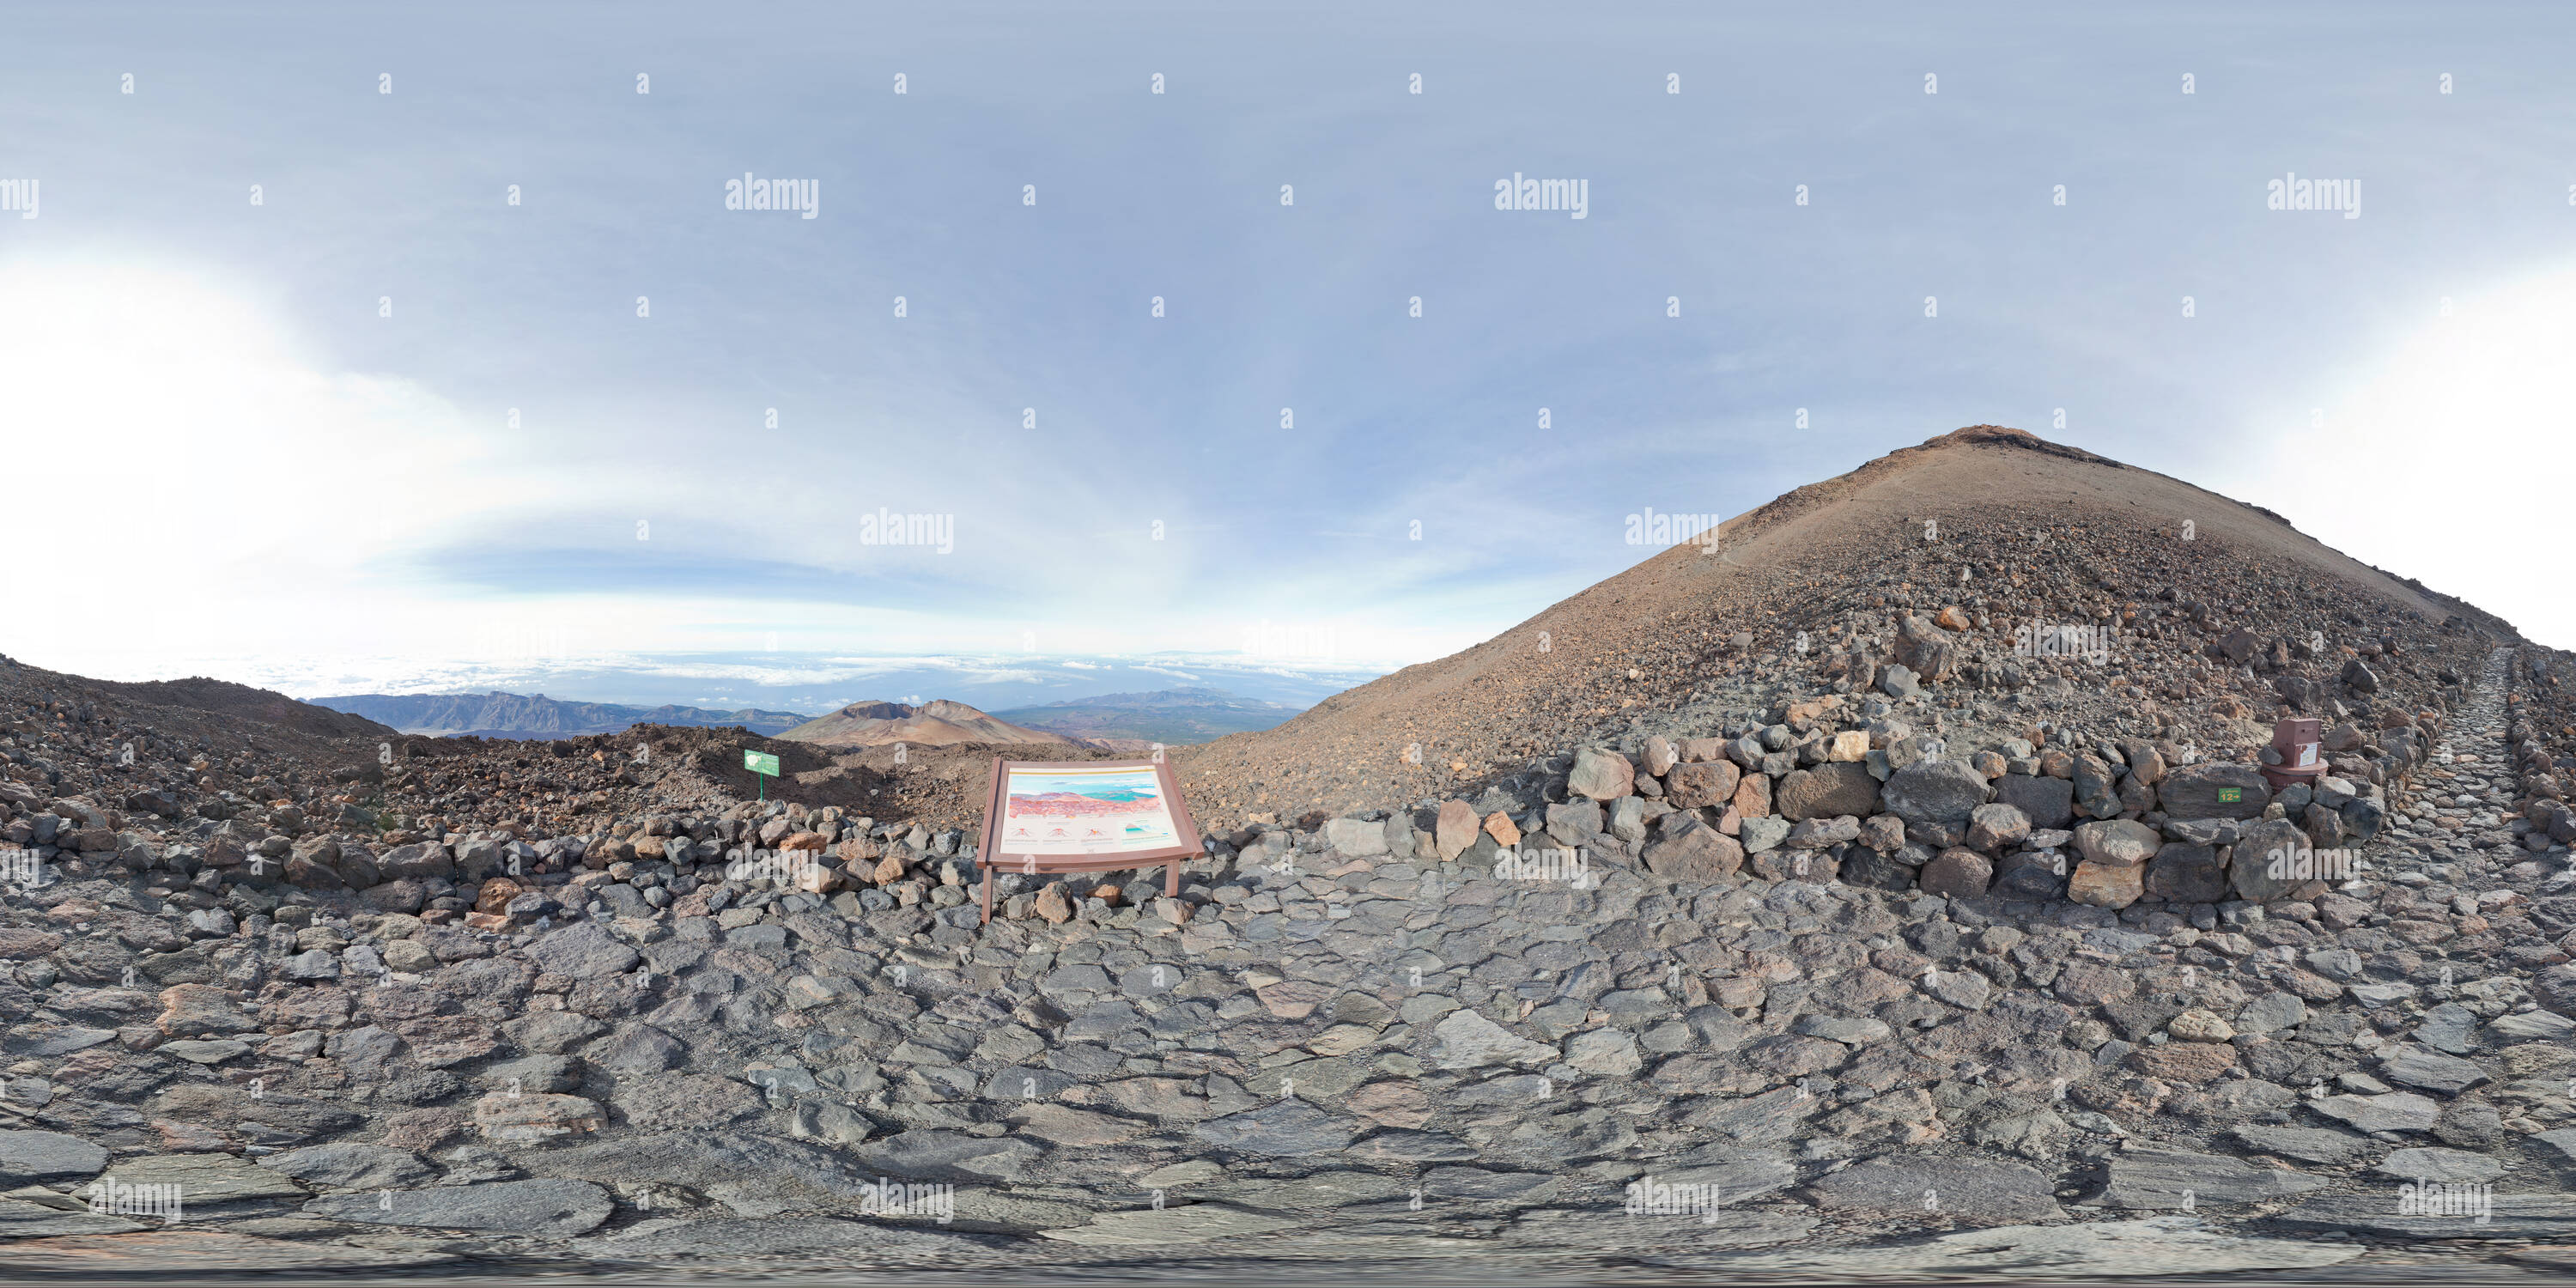 Visualizzazione panoramica a 360 gradi di Mirador del Pico Viejo